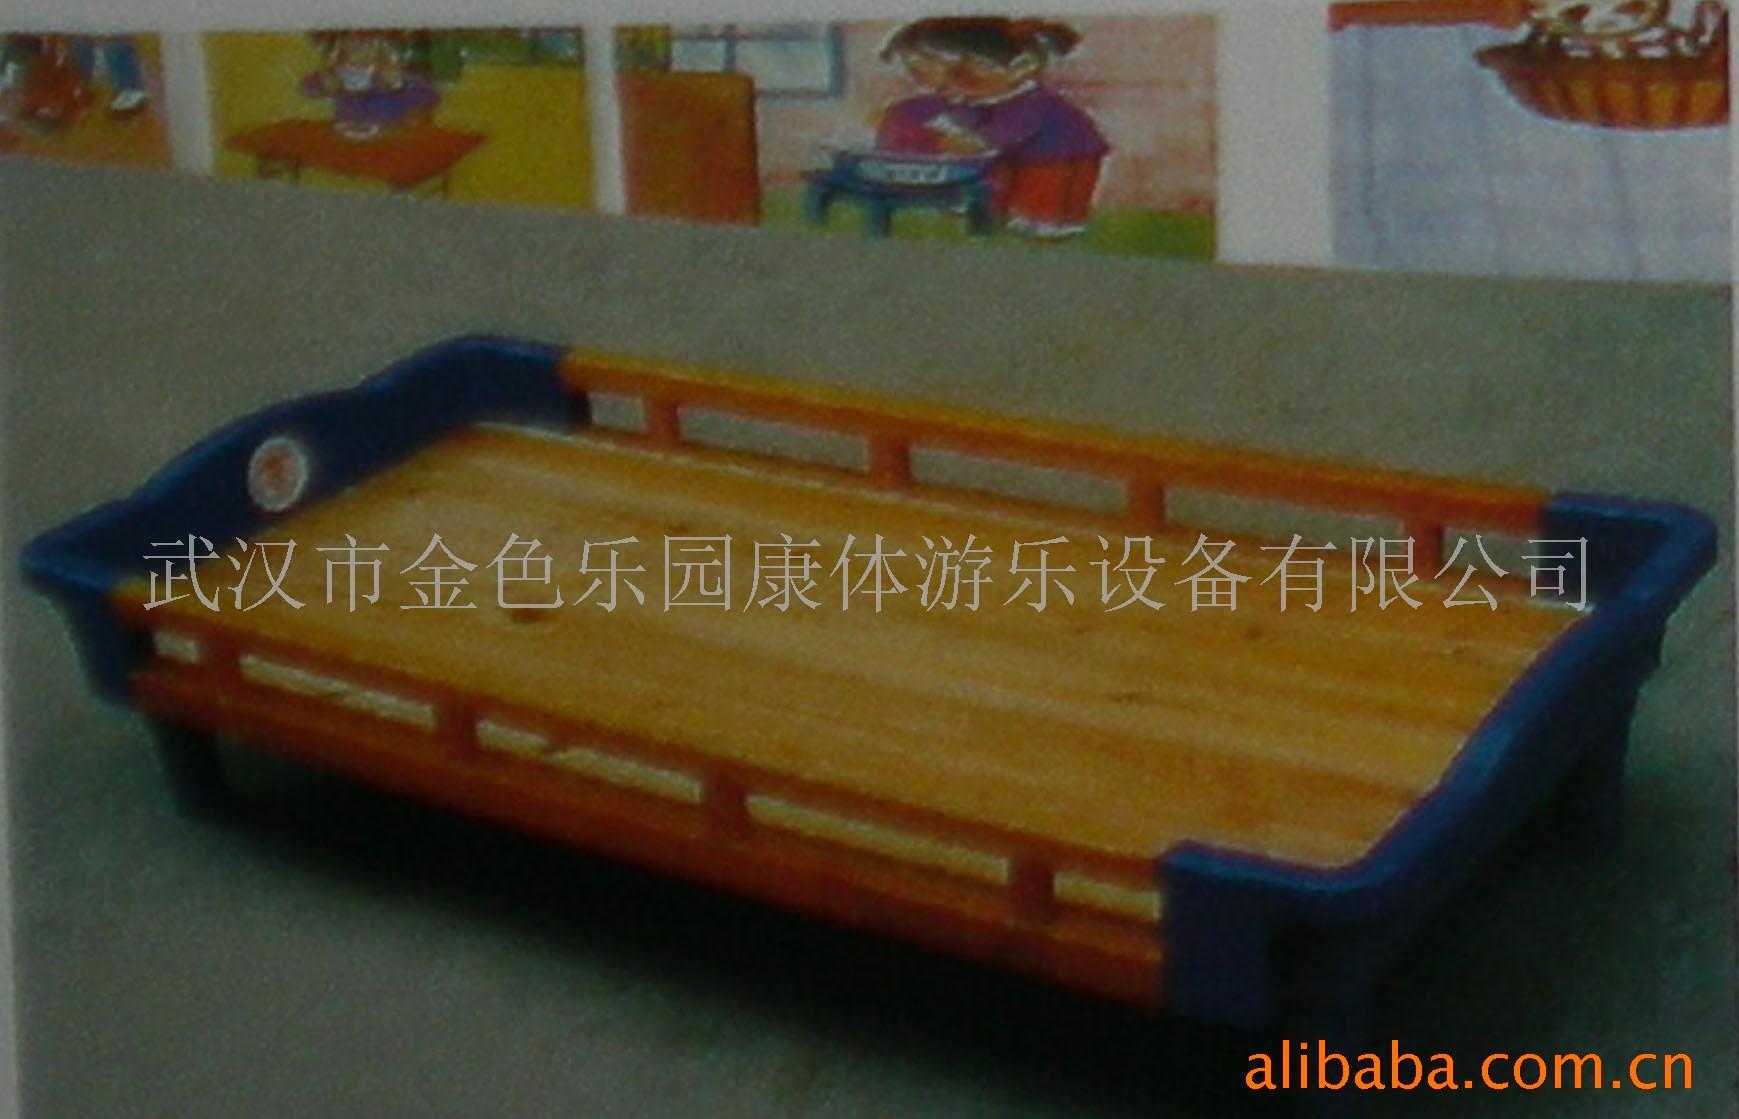 儿童床/儿童桌椅/儿童柜/儿童家具信息